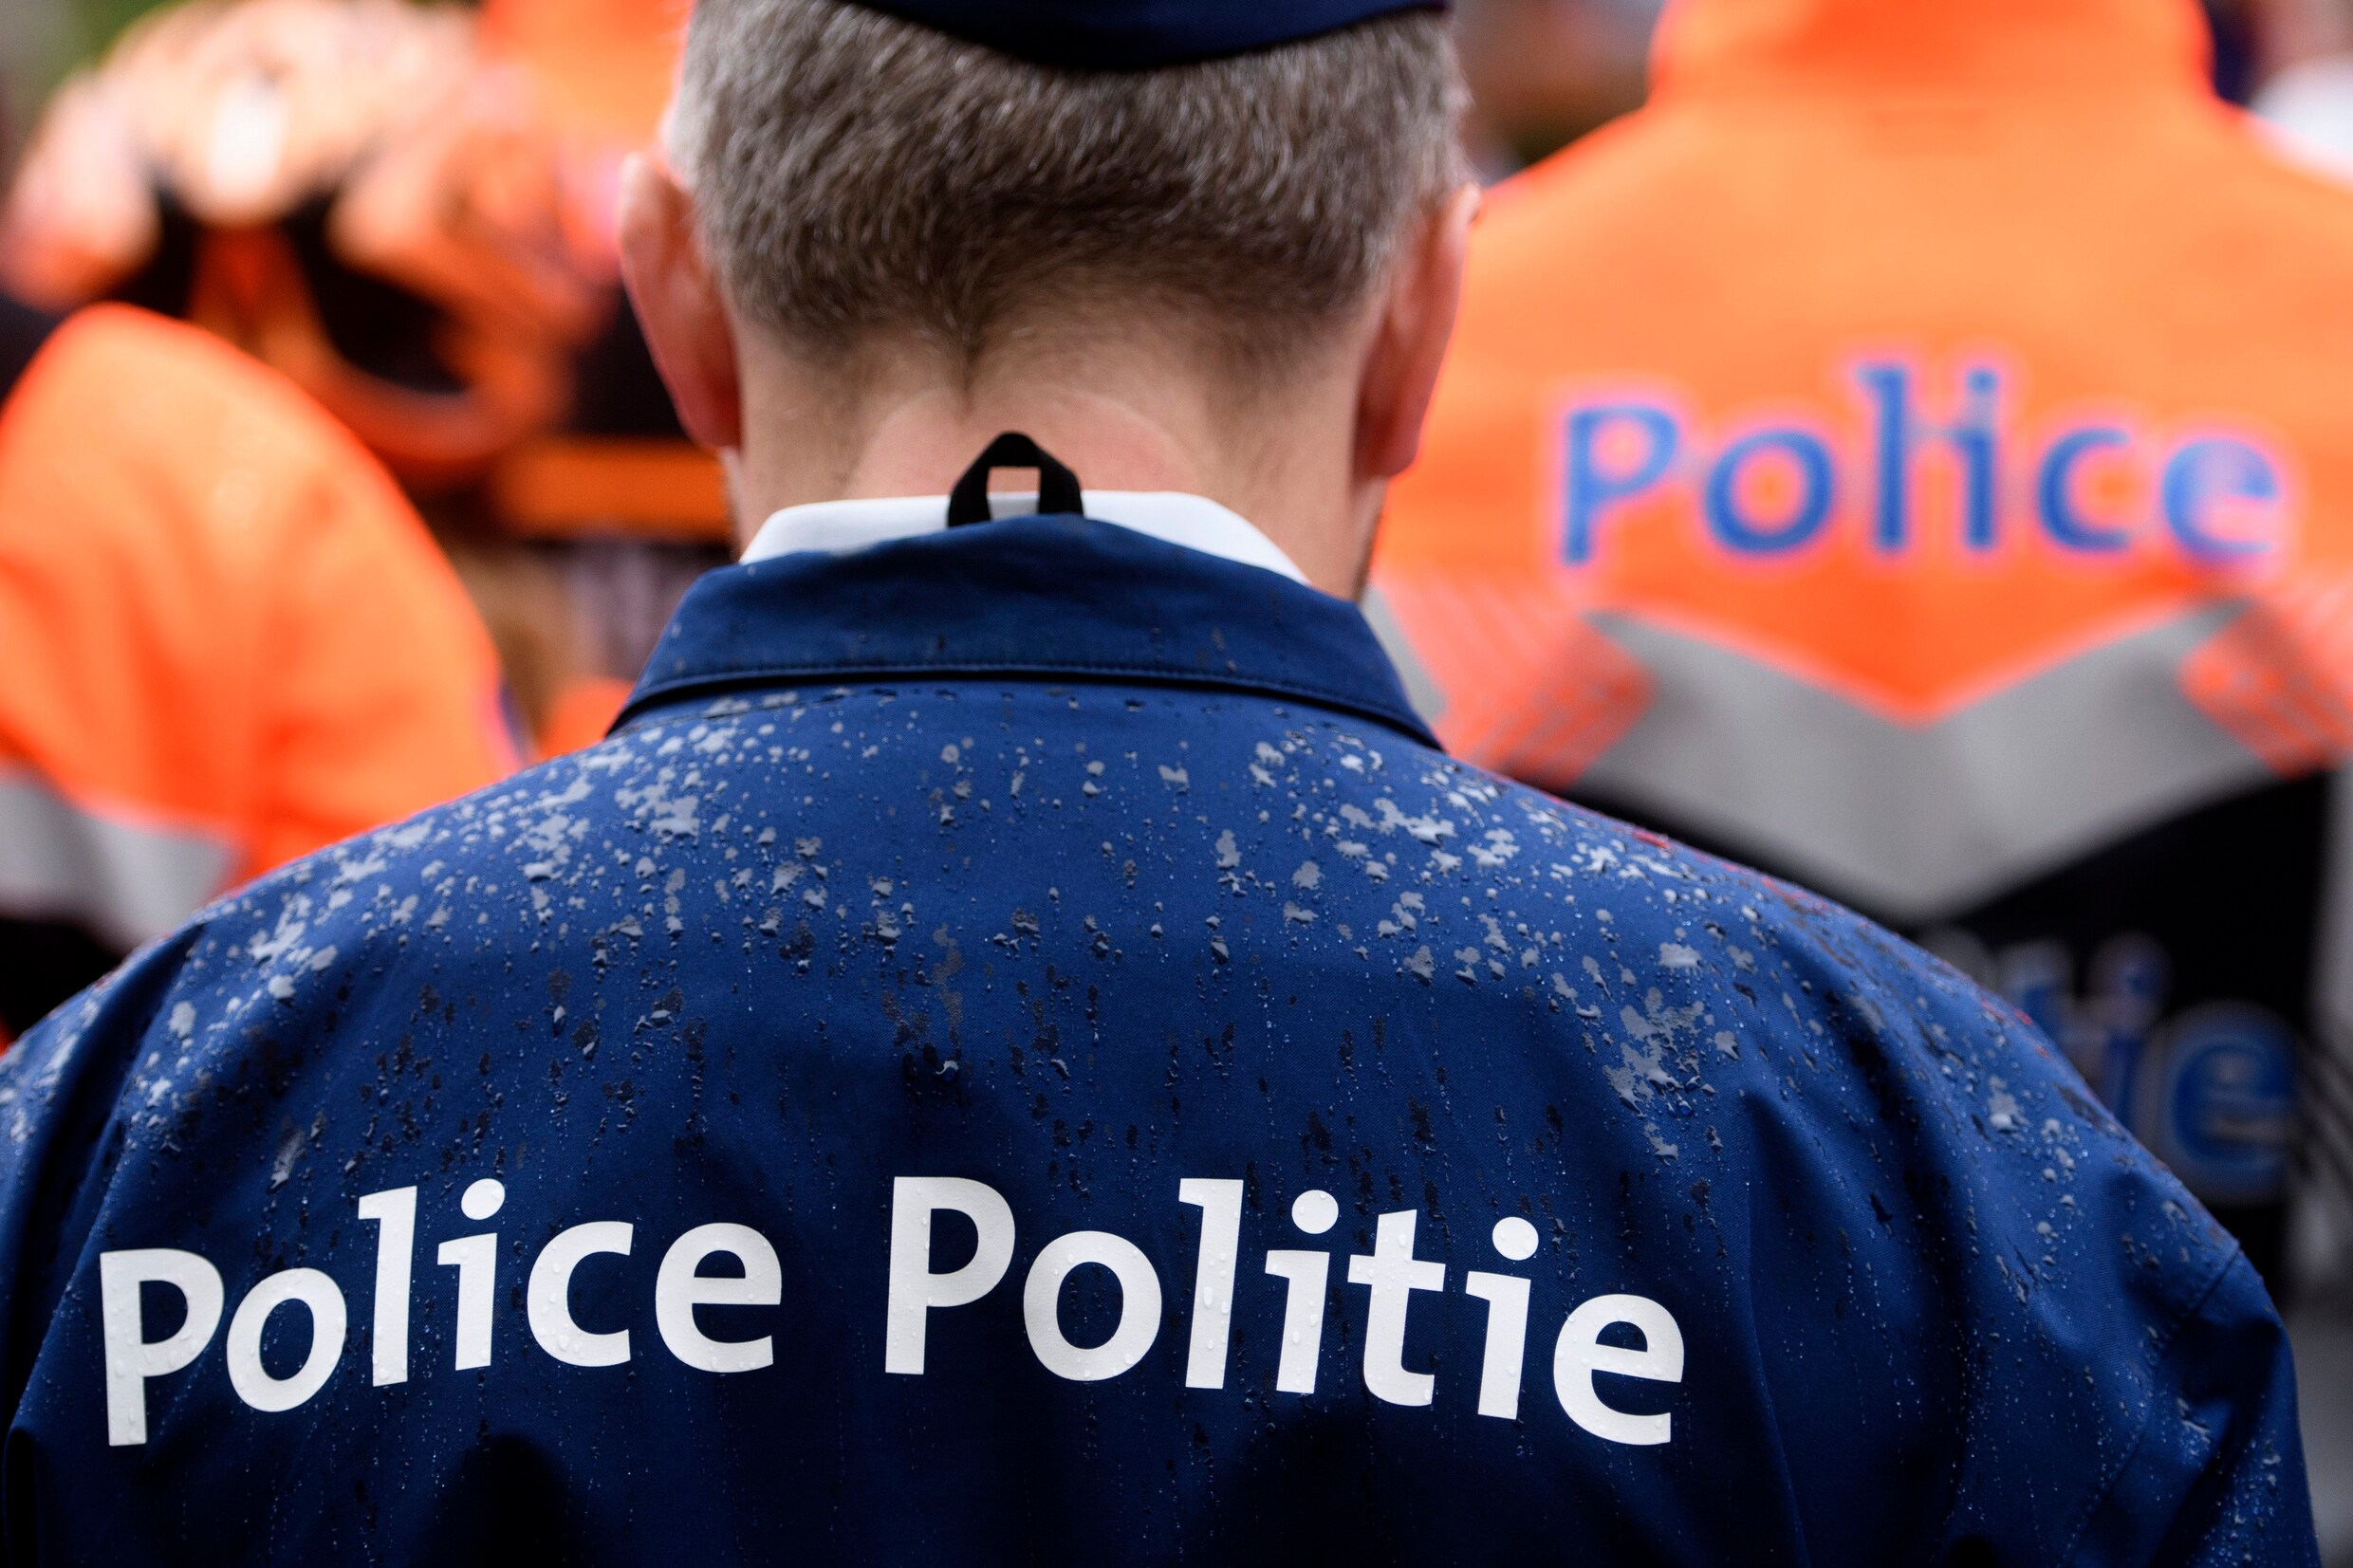 Politie brengt misdaadmilieu enkele zware klappen toe: 14 miljard euro in beslaggenomen